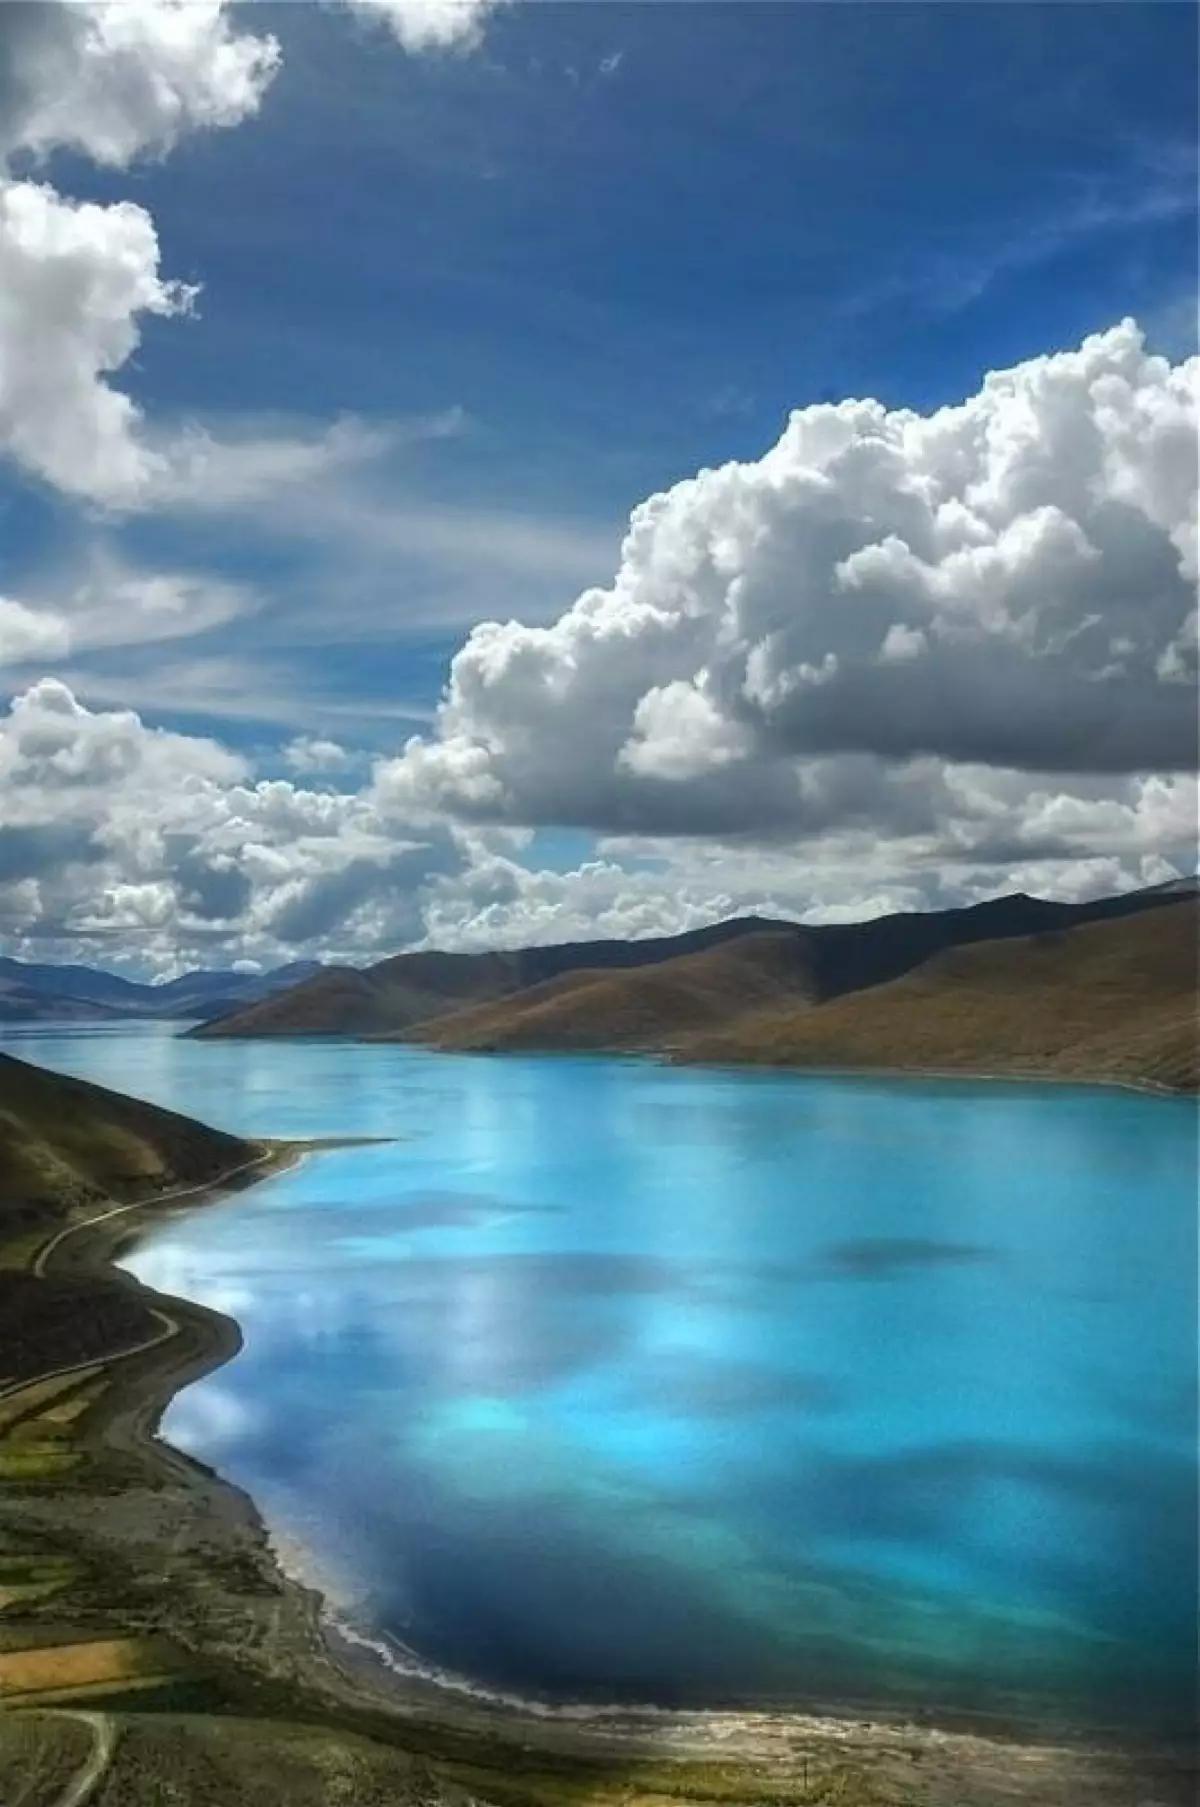 羊卓雍错喜马拉雅山北麓最大的内陆湖泊,湖光山色之美,冠绝藏南,与